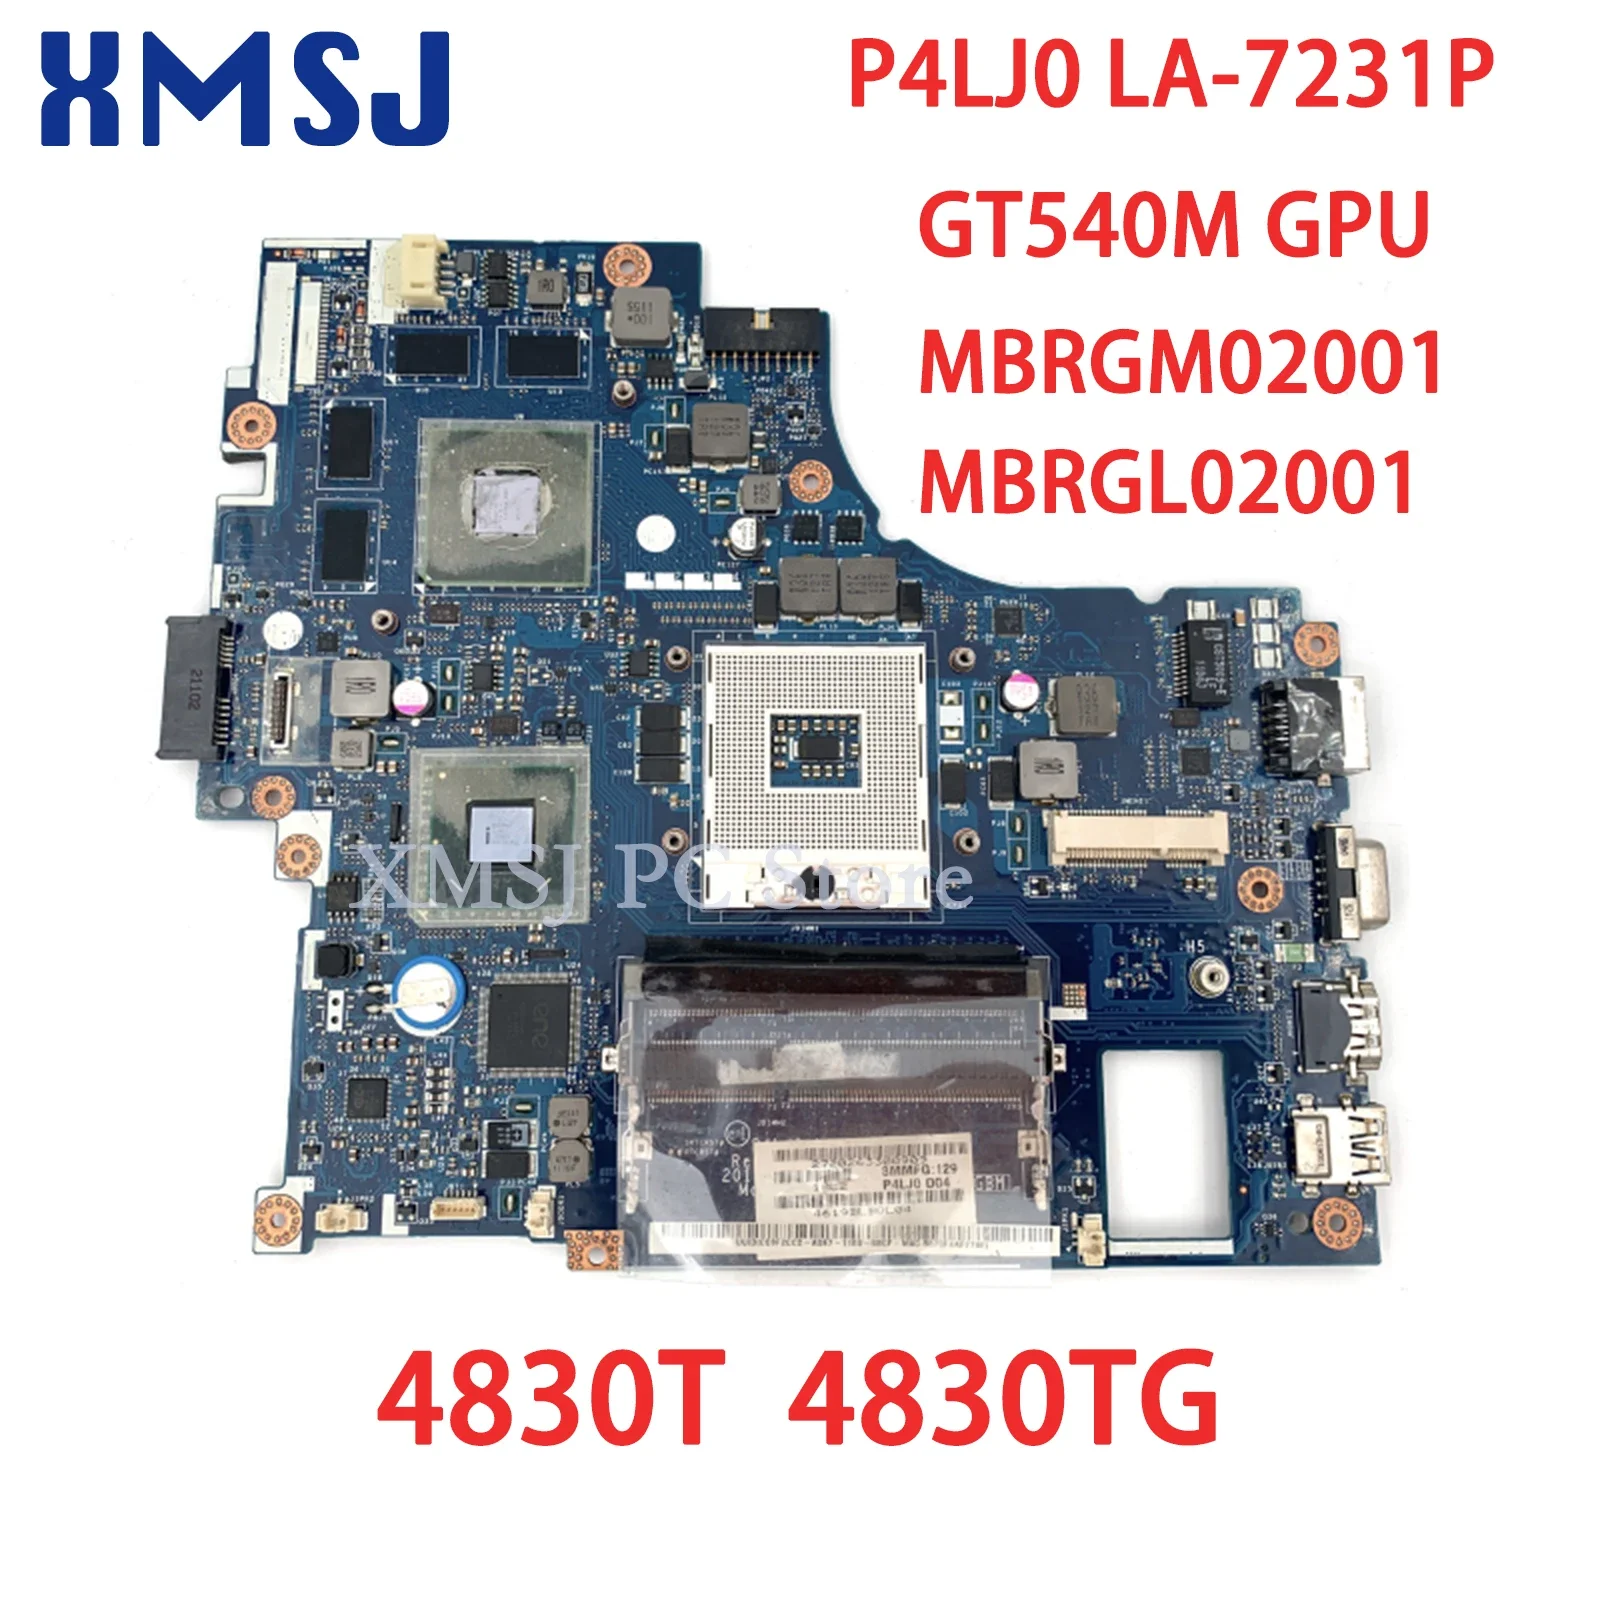 

Материнская плата XMSJ для ноутбука Acer Aspire 4830TG 4830T, материнская плата P4LJ0 LA-7231P MBRGM02001 MBRGL02001 GT540M GPU DDR3, основная плата